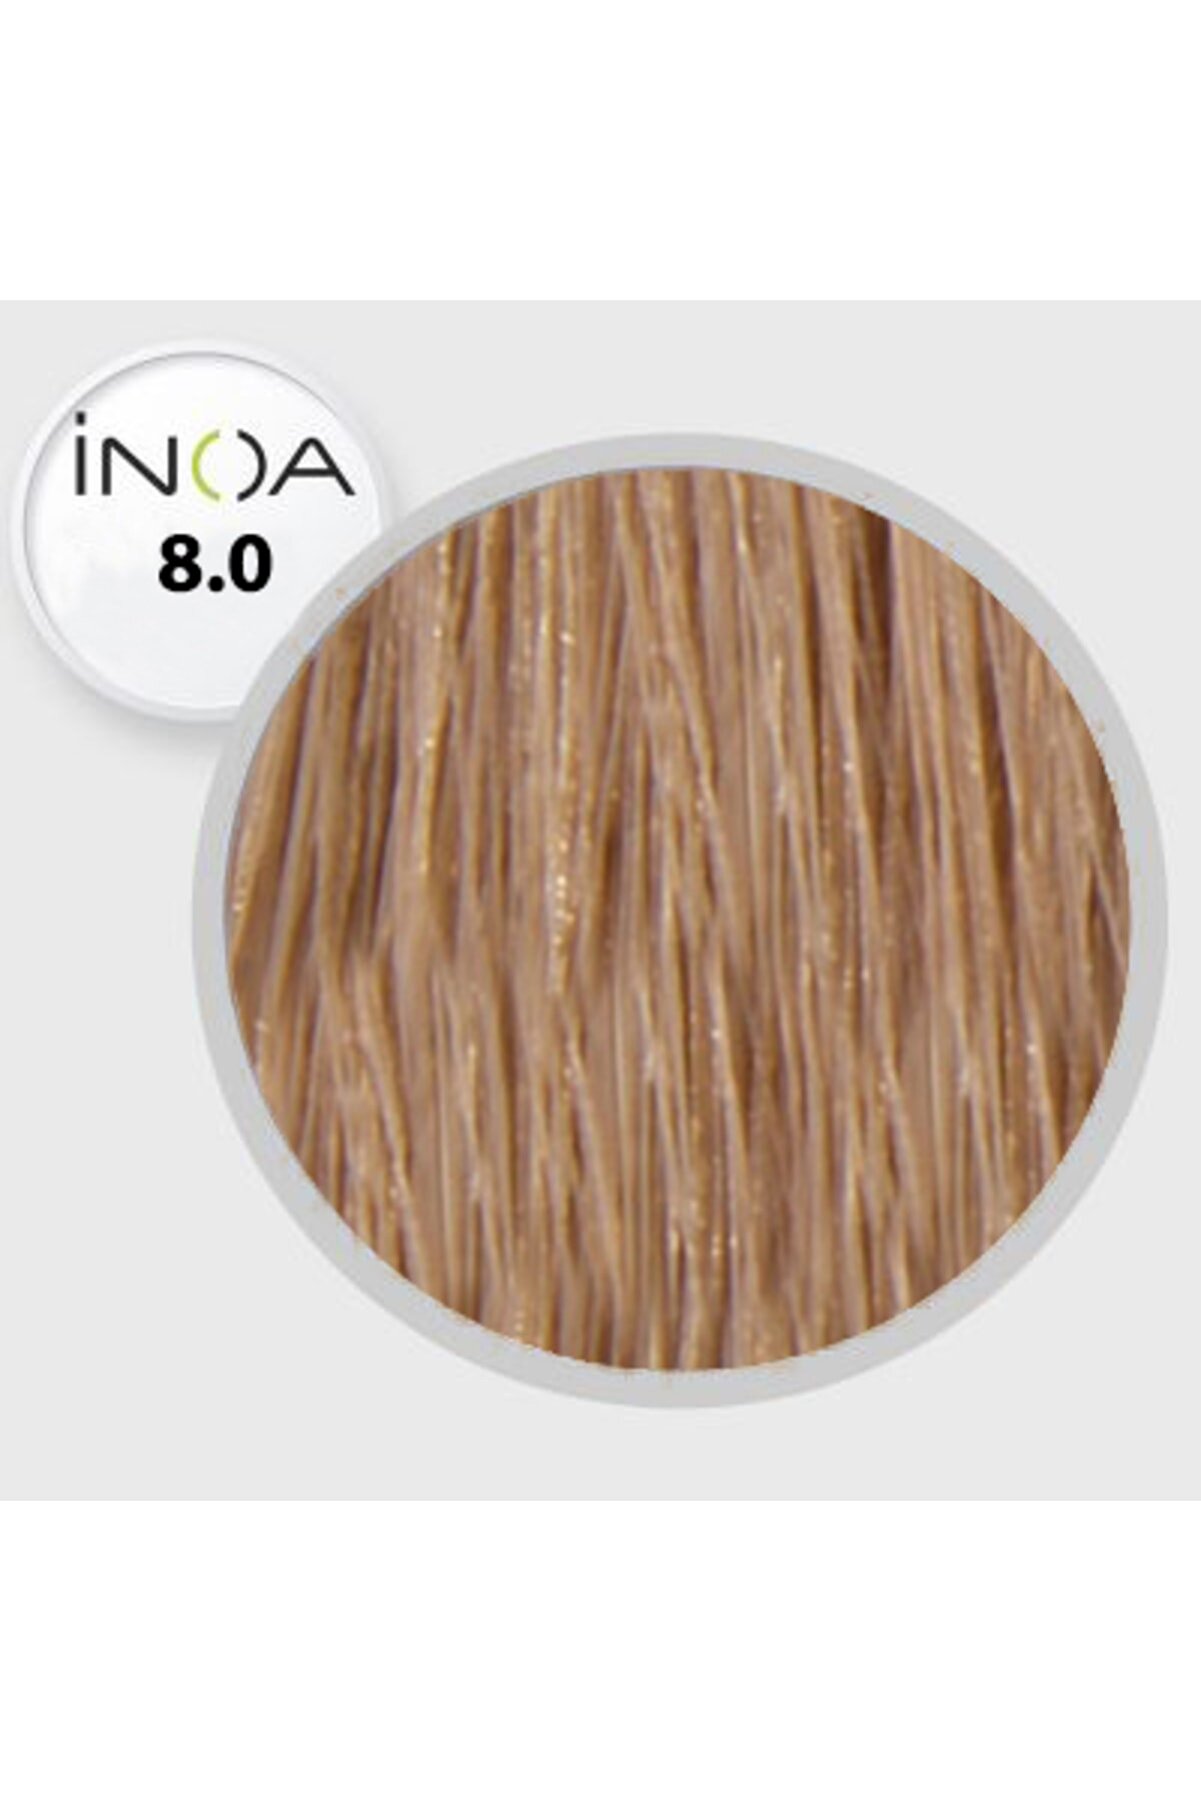 İNOA Saç Boyası 8,0 Yoğun Koyu Sarı 3474630642850